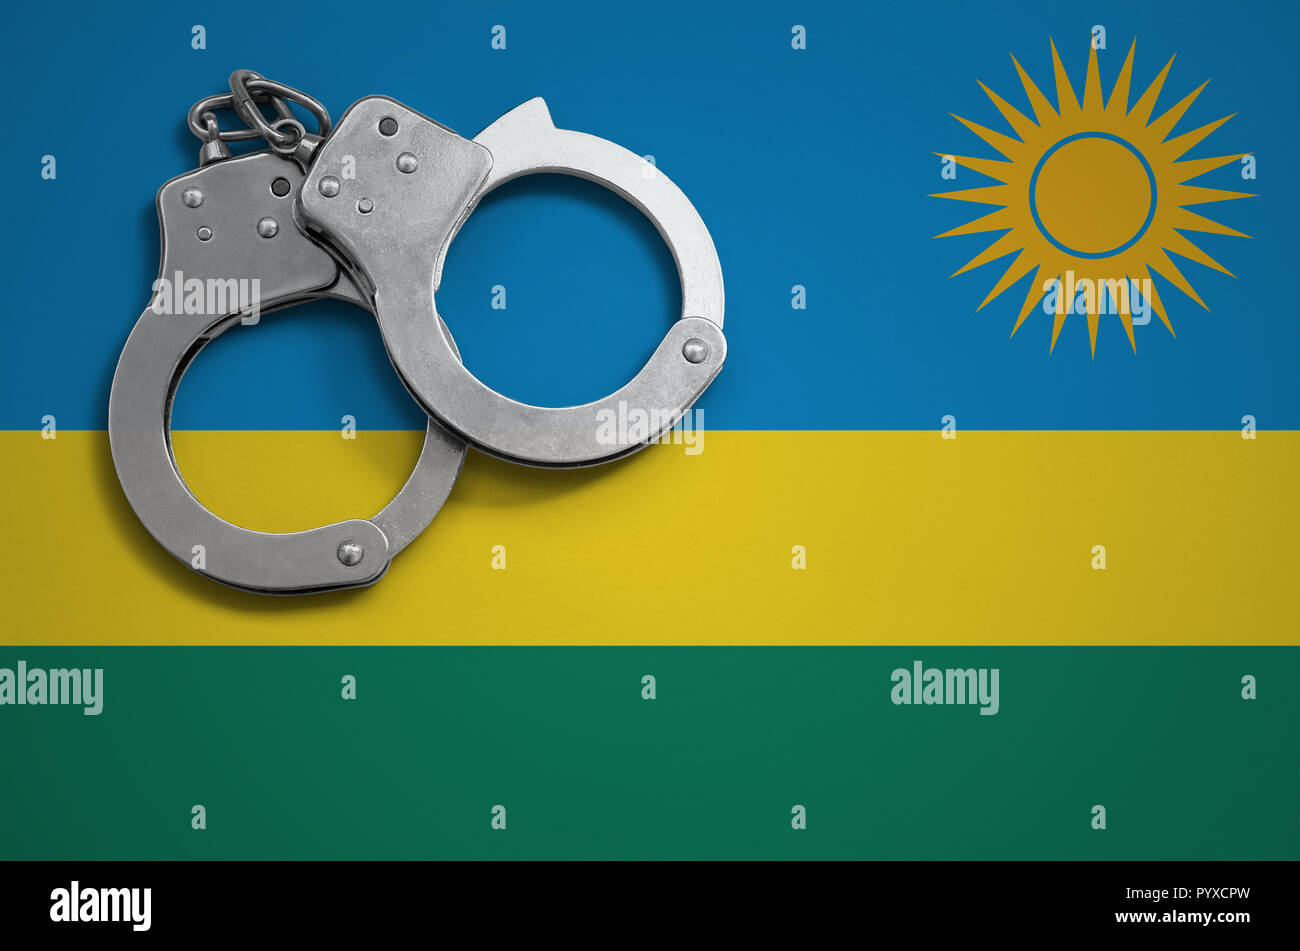 Ruanda bandiera e manette di polizia. Il concetto di criminalità e i reati nel paese. Foto Stock